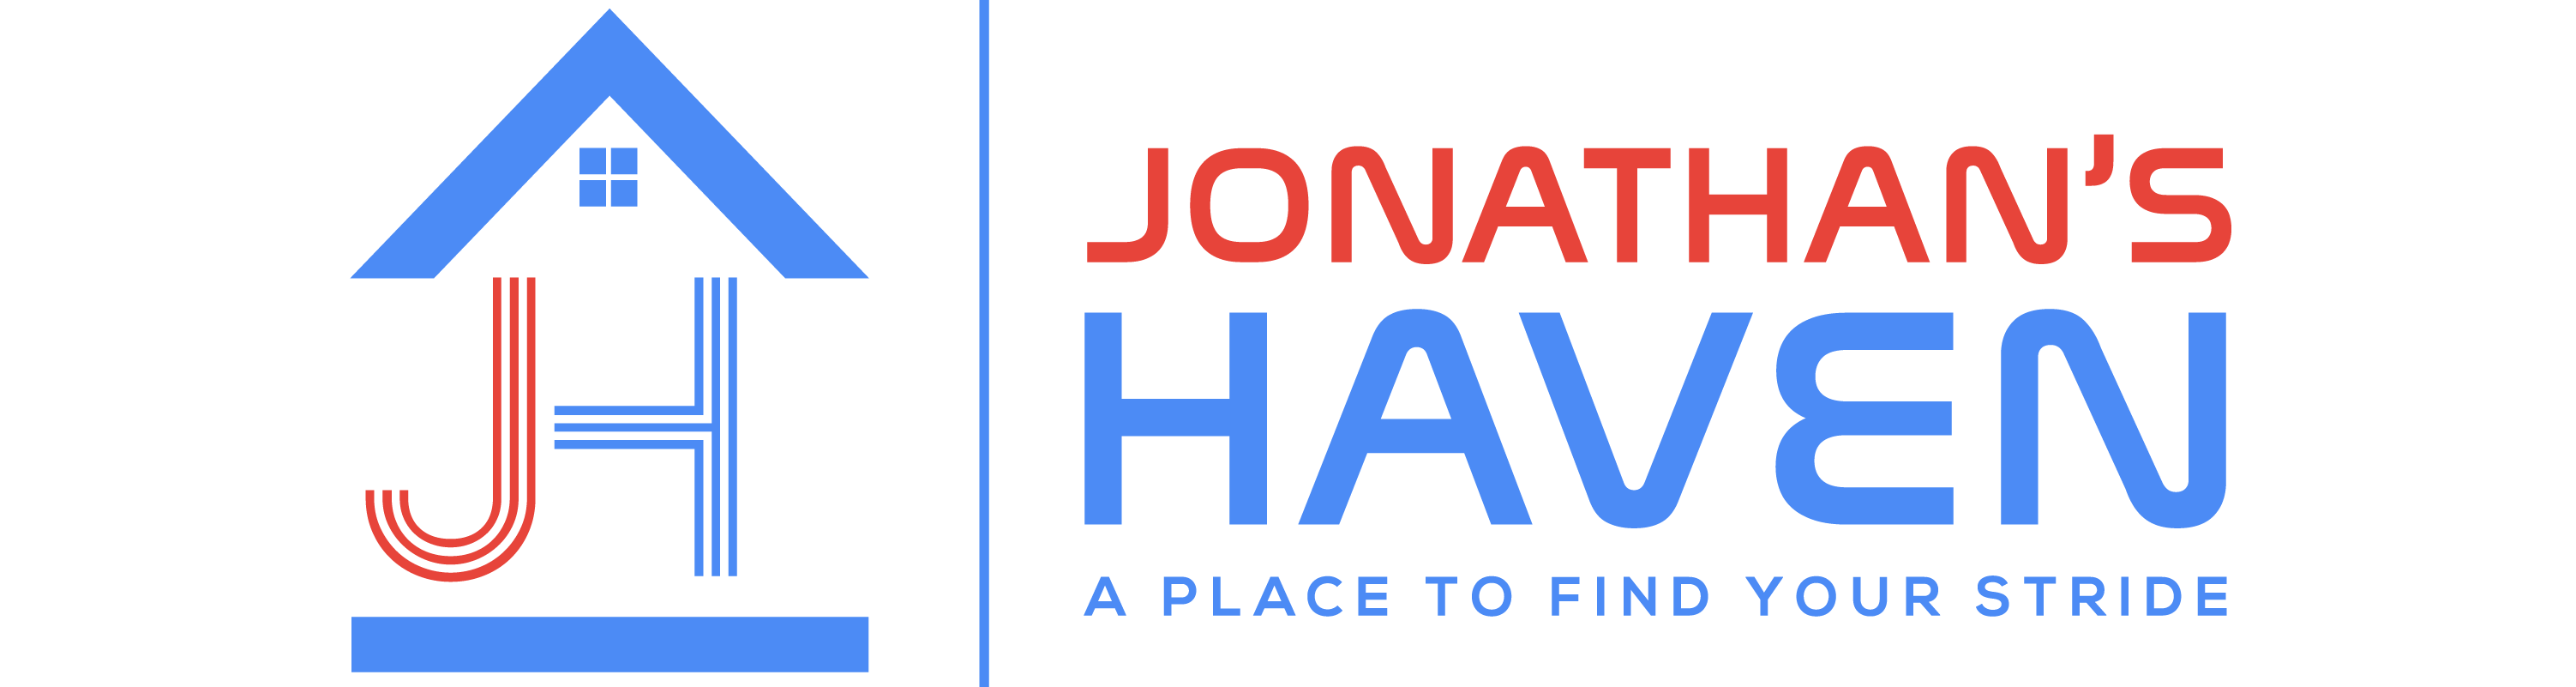 Jonathan's Haven